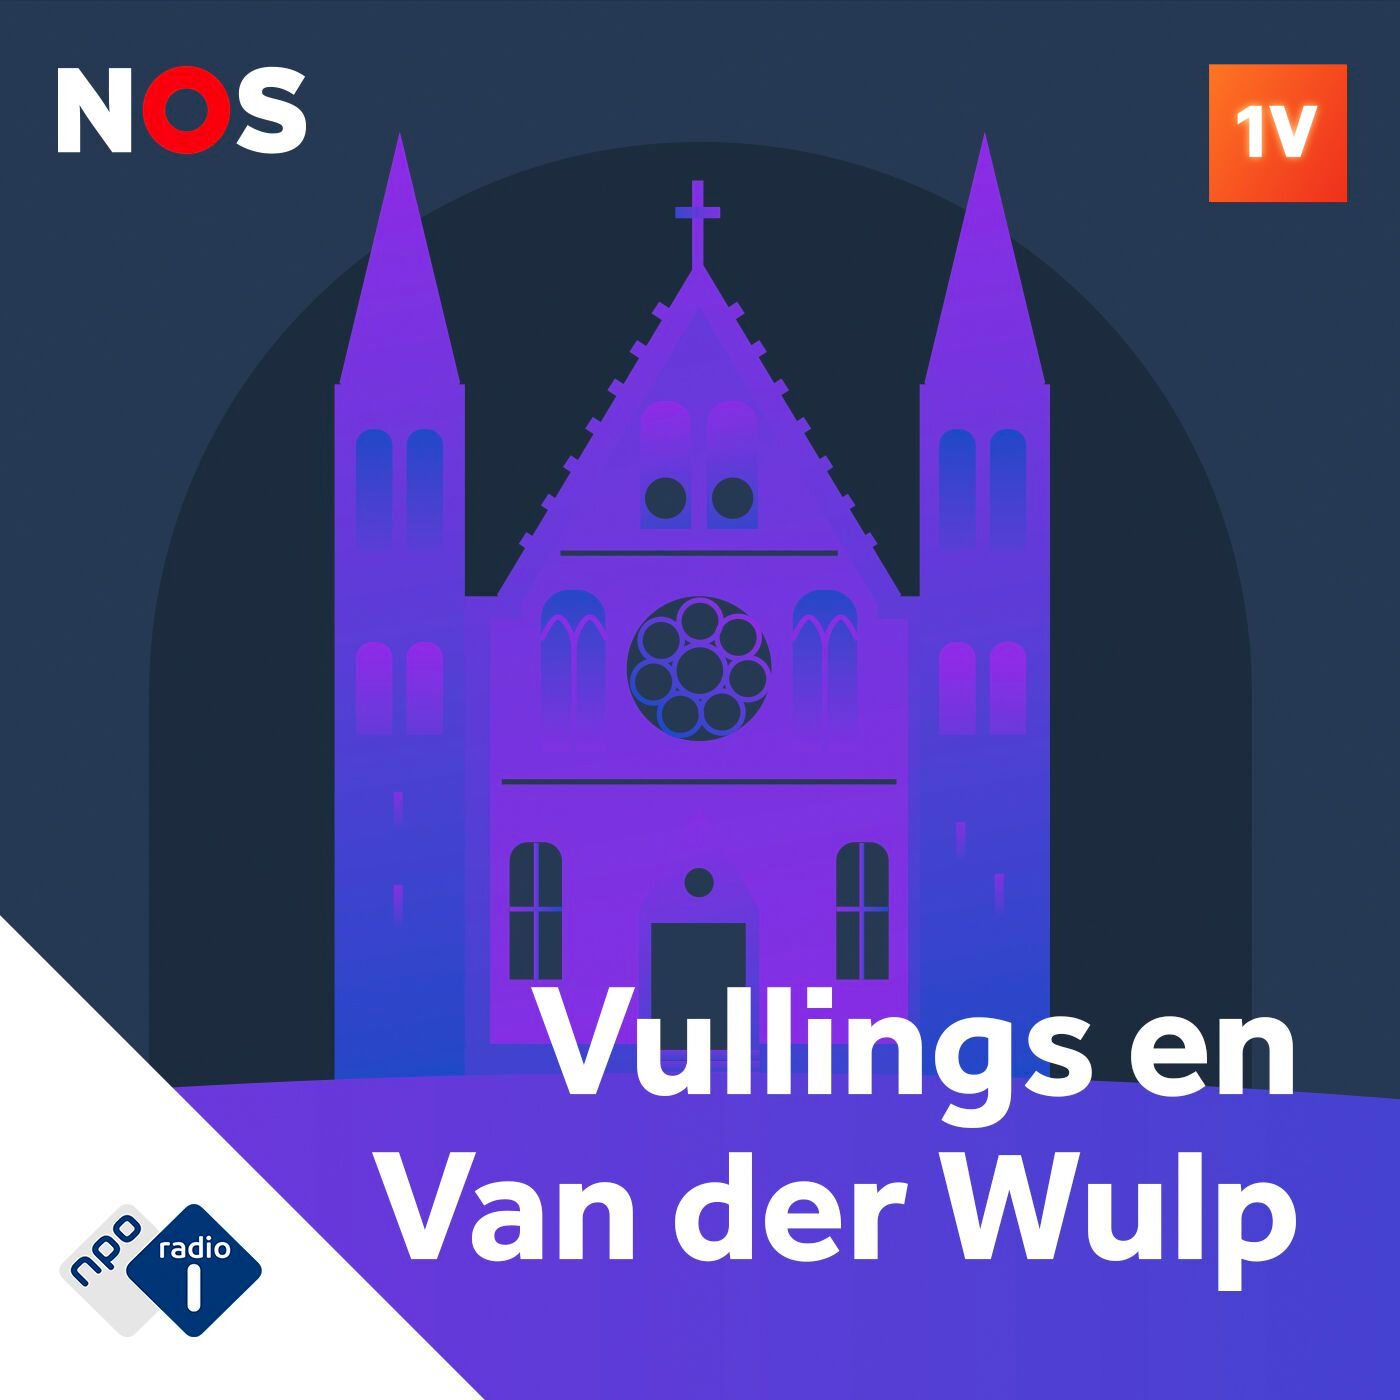 De Stemming van Vullings en Van der Wulp podcast show image